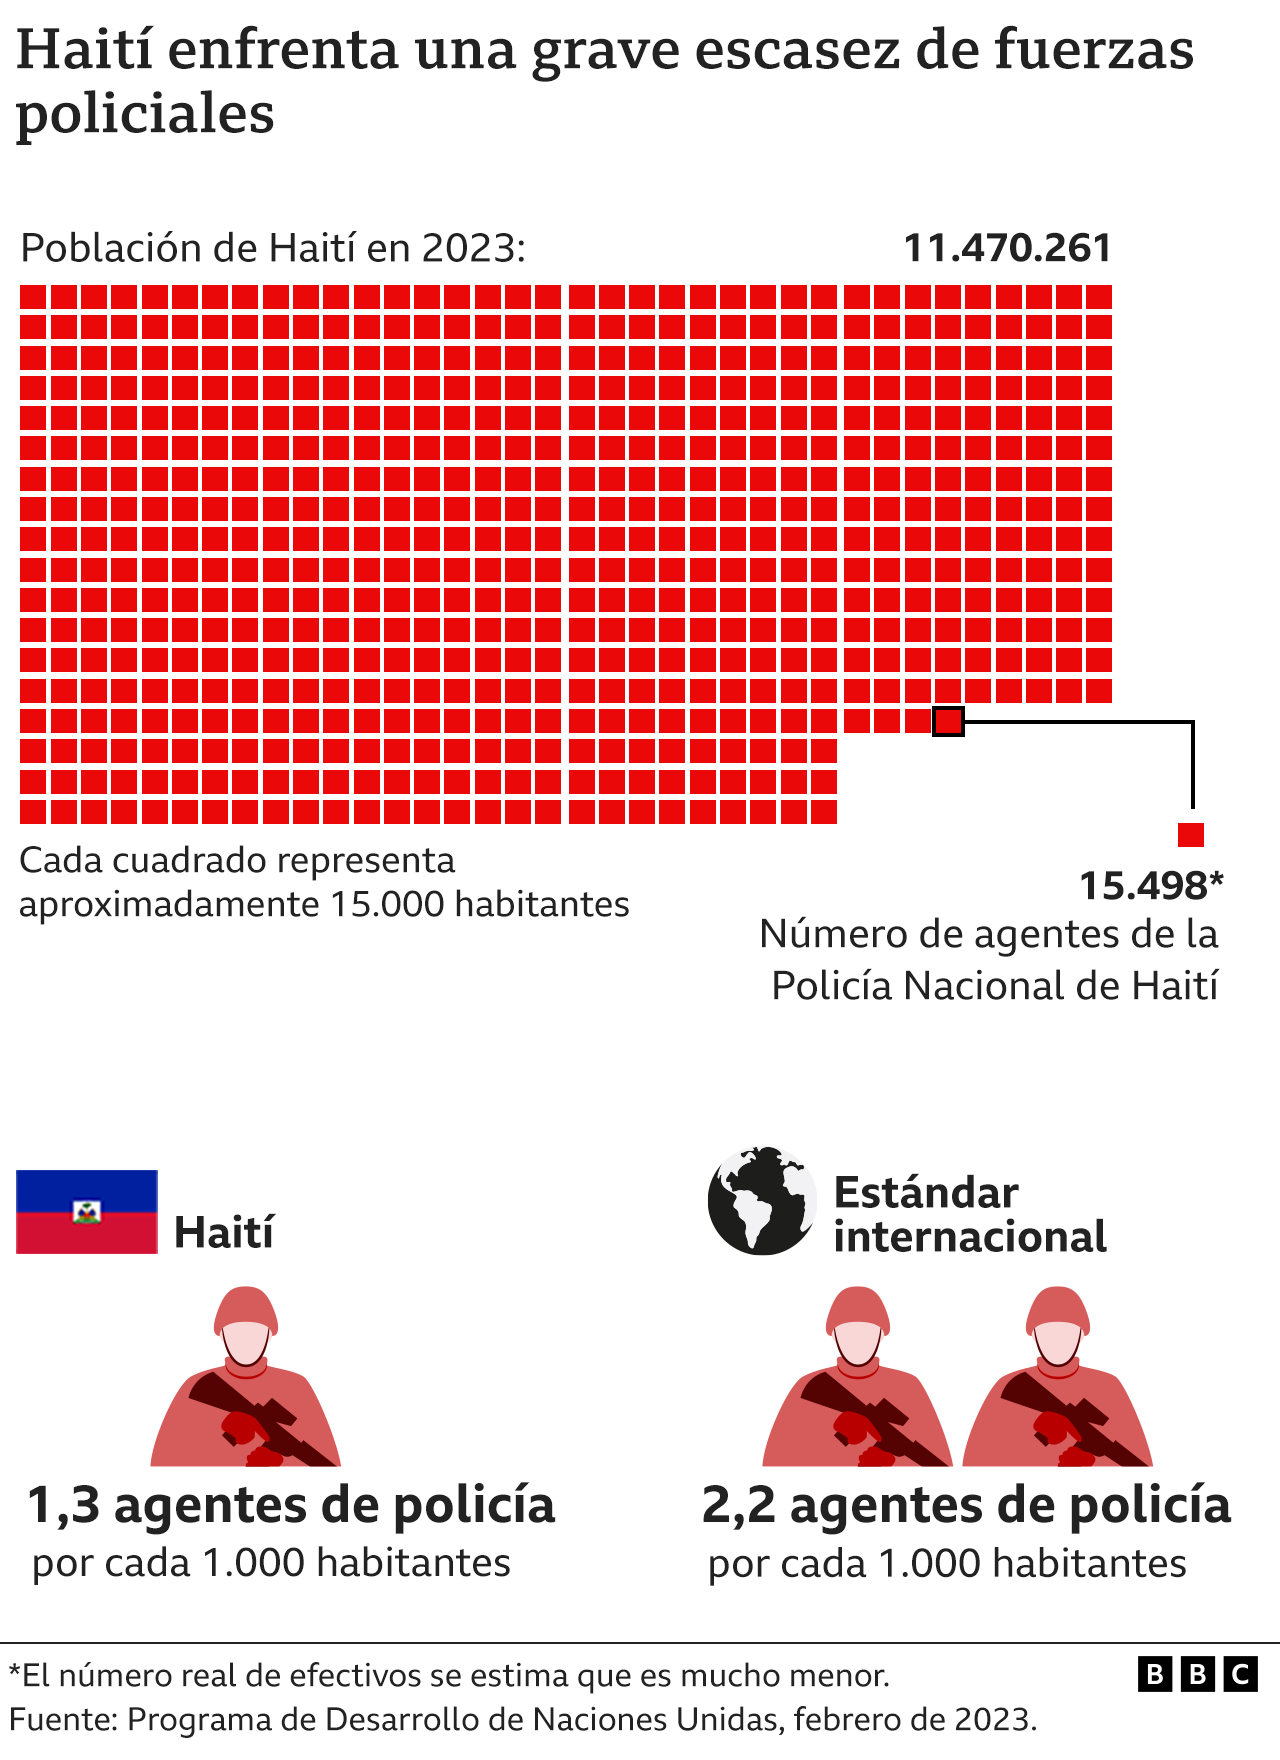 Gráfico sobre las fuerzas policiales en Haití.